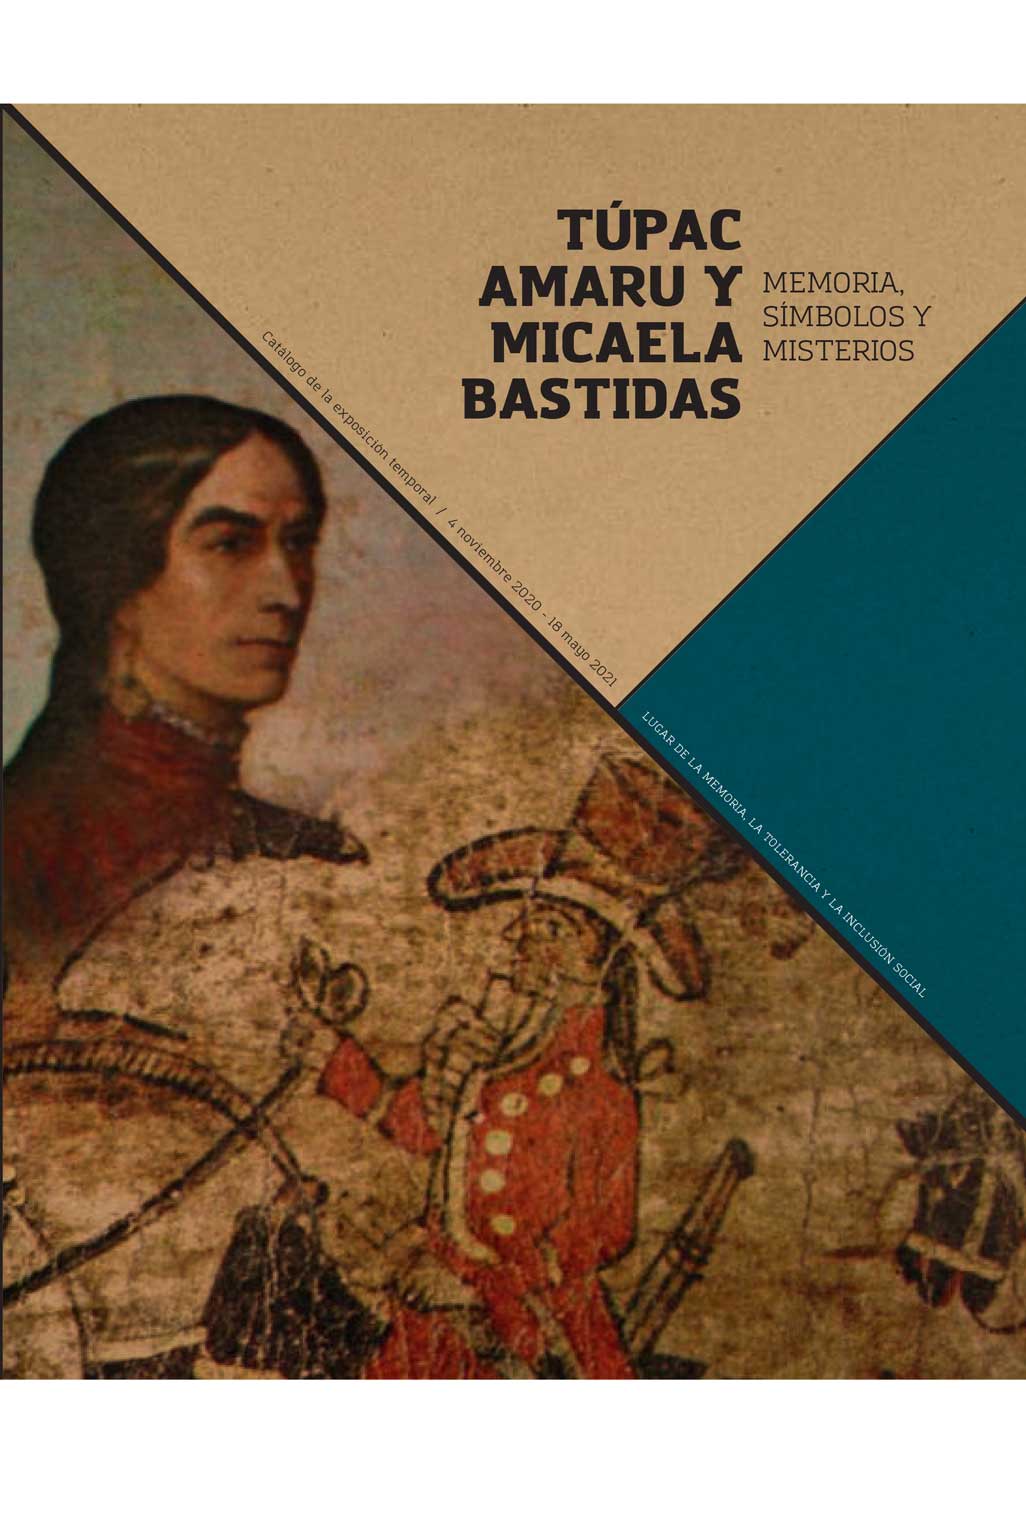 Catálogo de la exposición Túpac Amaru y Micaela Bastidas